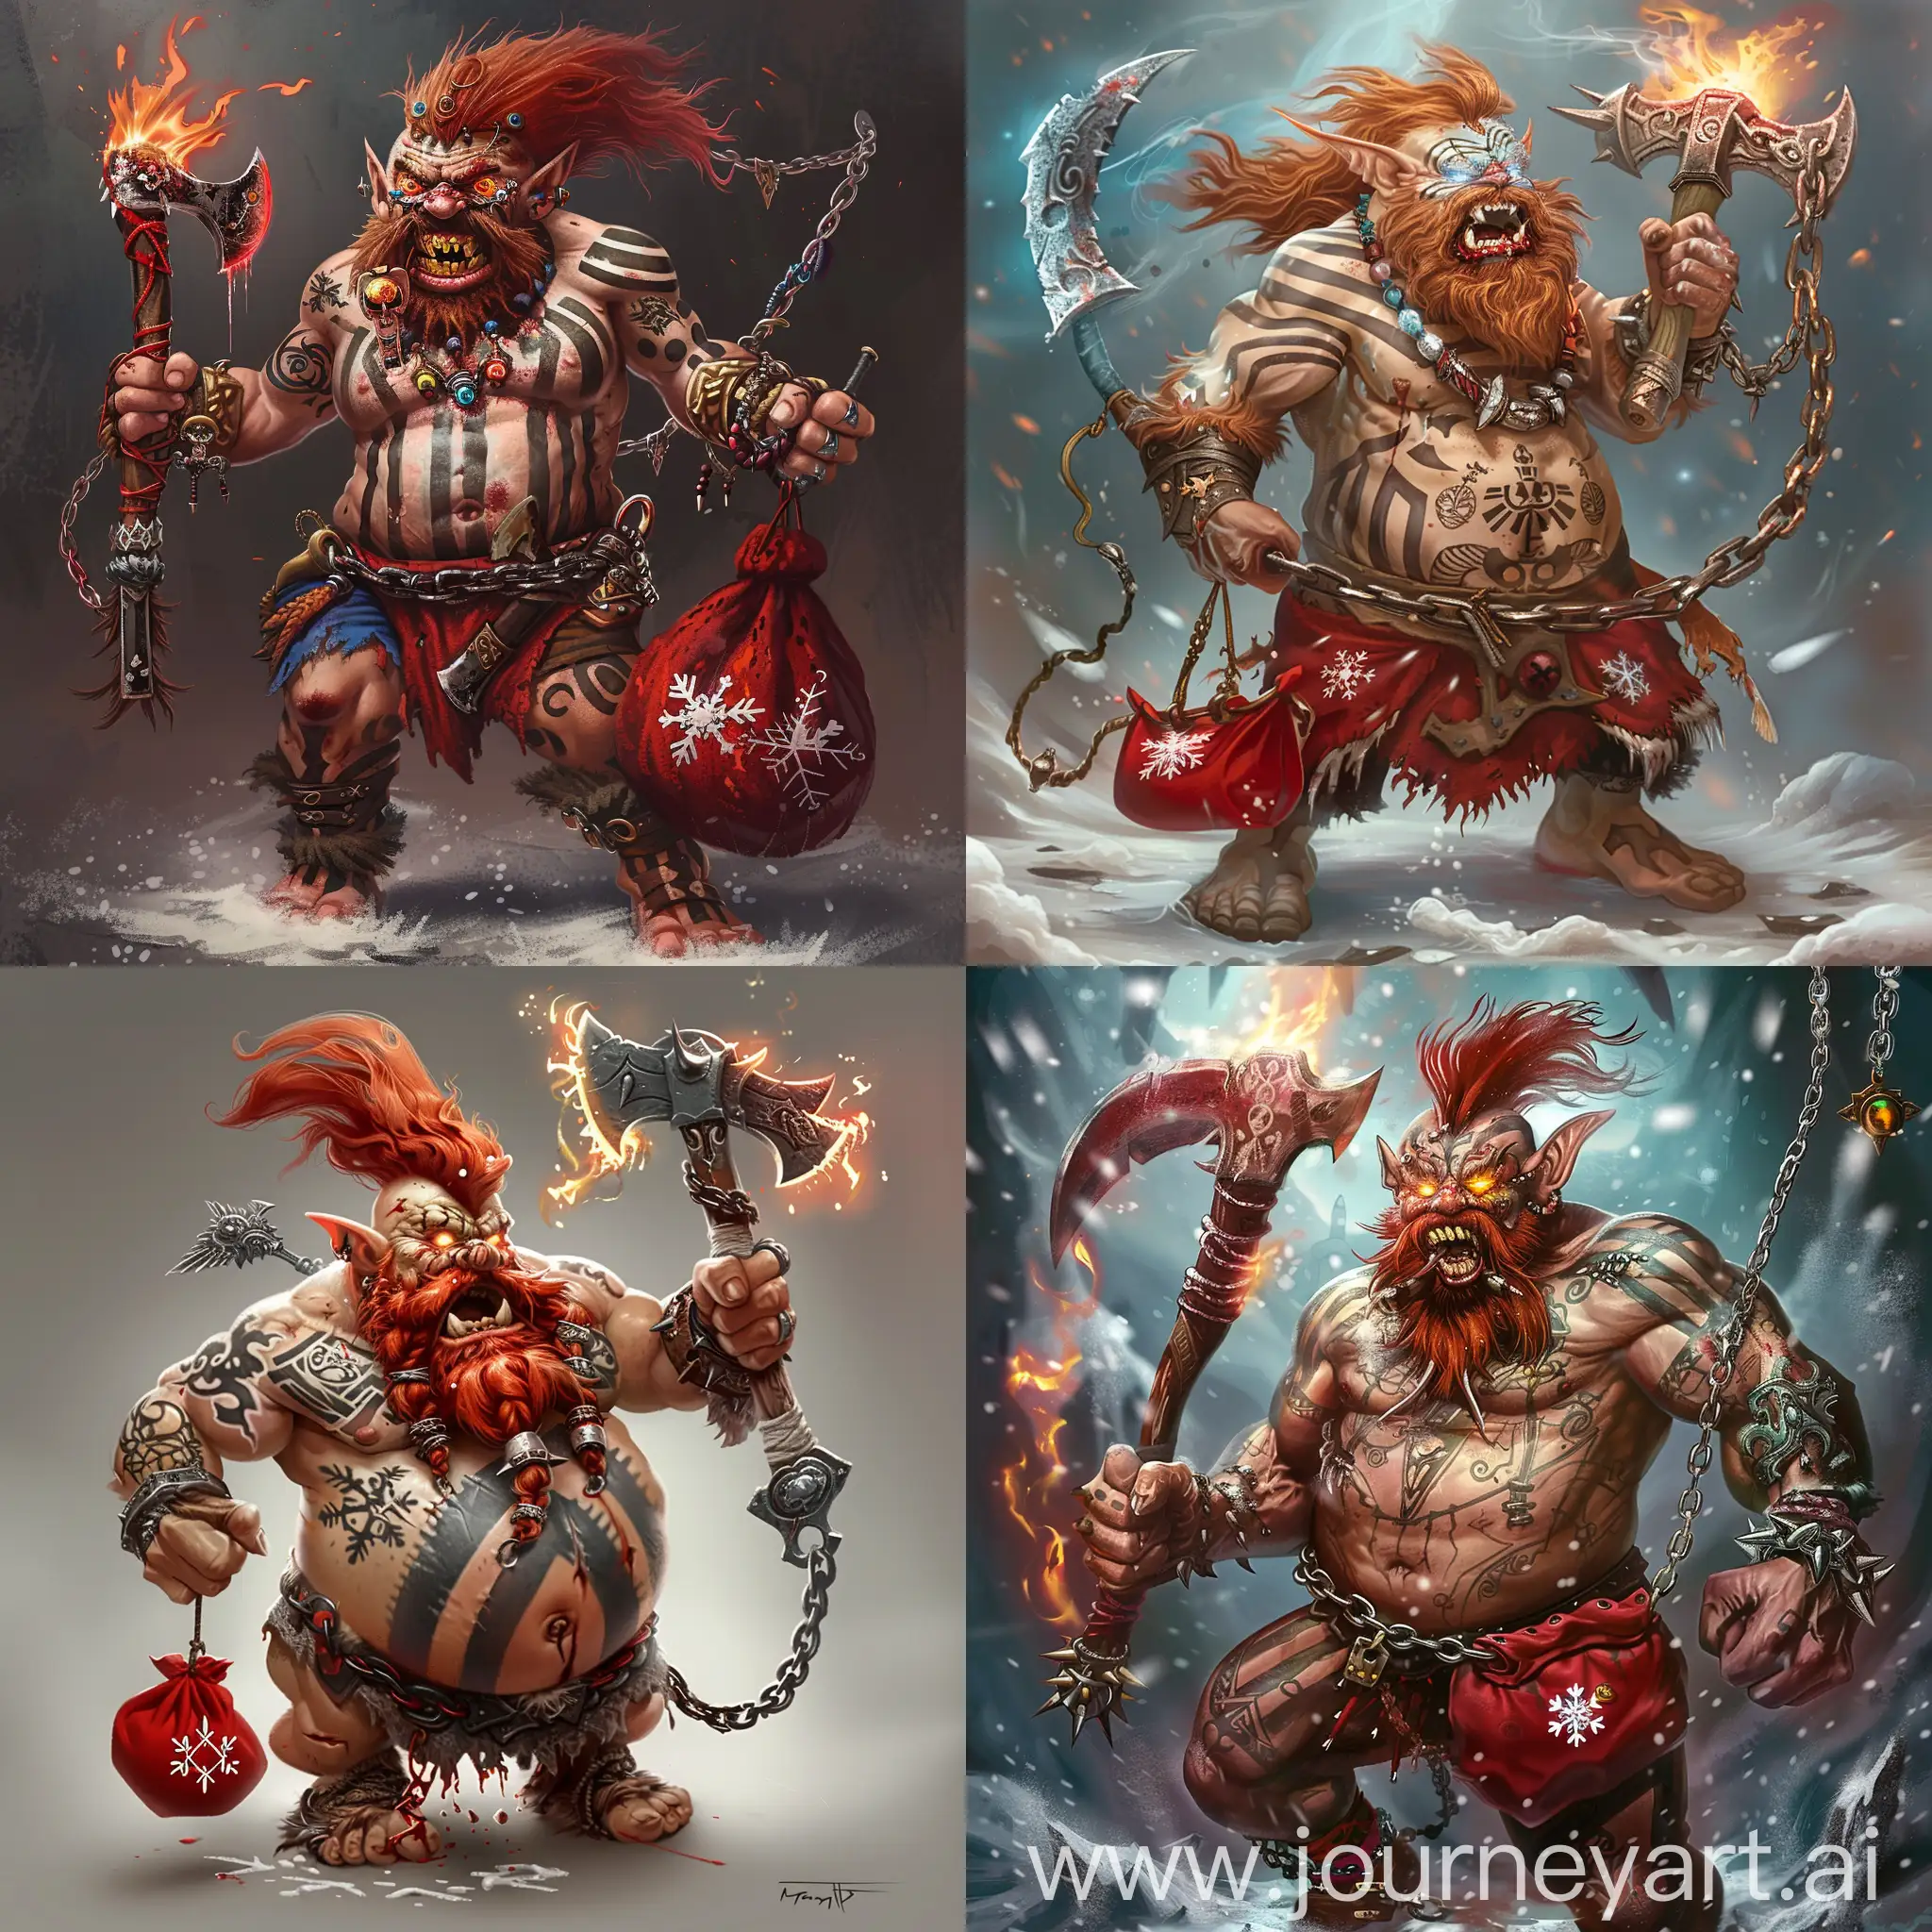 Fiery-Barbarian-Dwarf-Swinging-Axe-in-Epic-Fantasy-Art